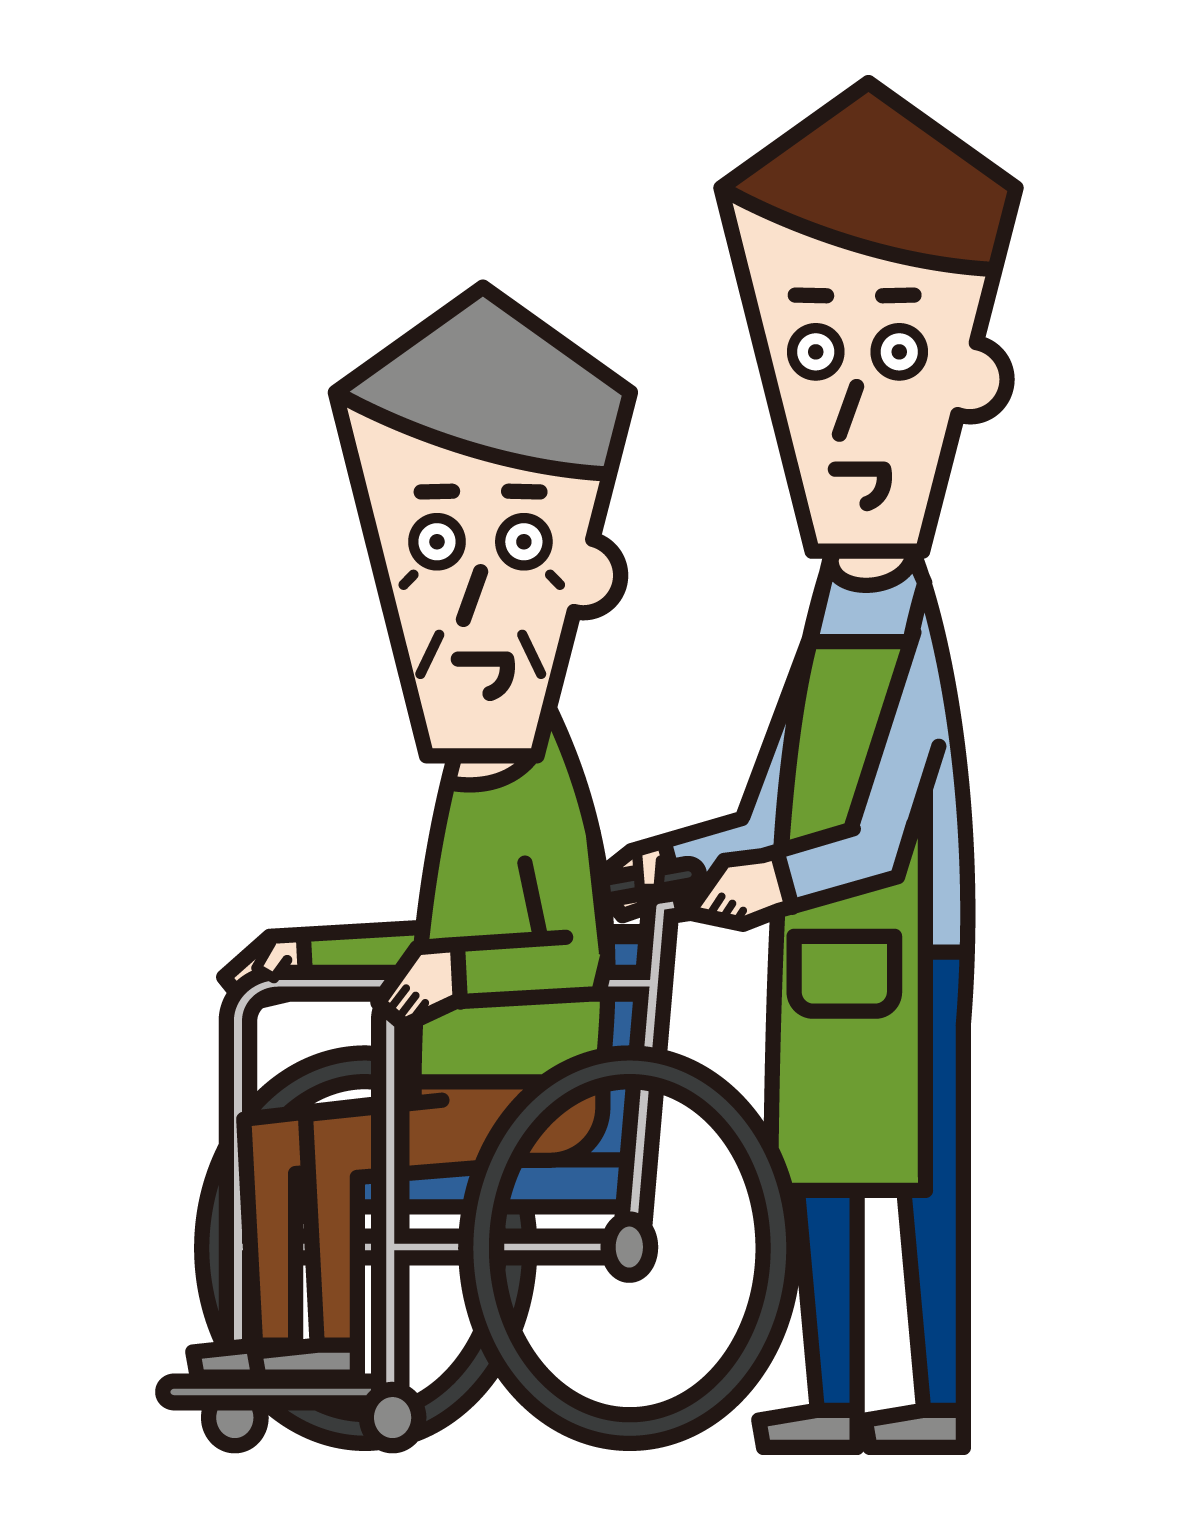 휠체어를 탄 사람(할아버지)과 방문 간병인(남성)이 밀고 있는 모습